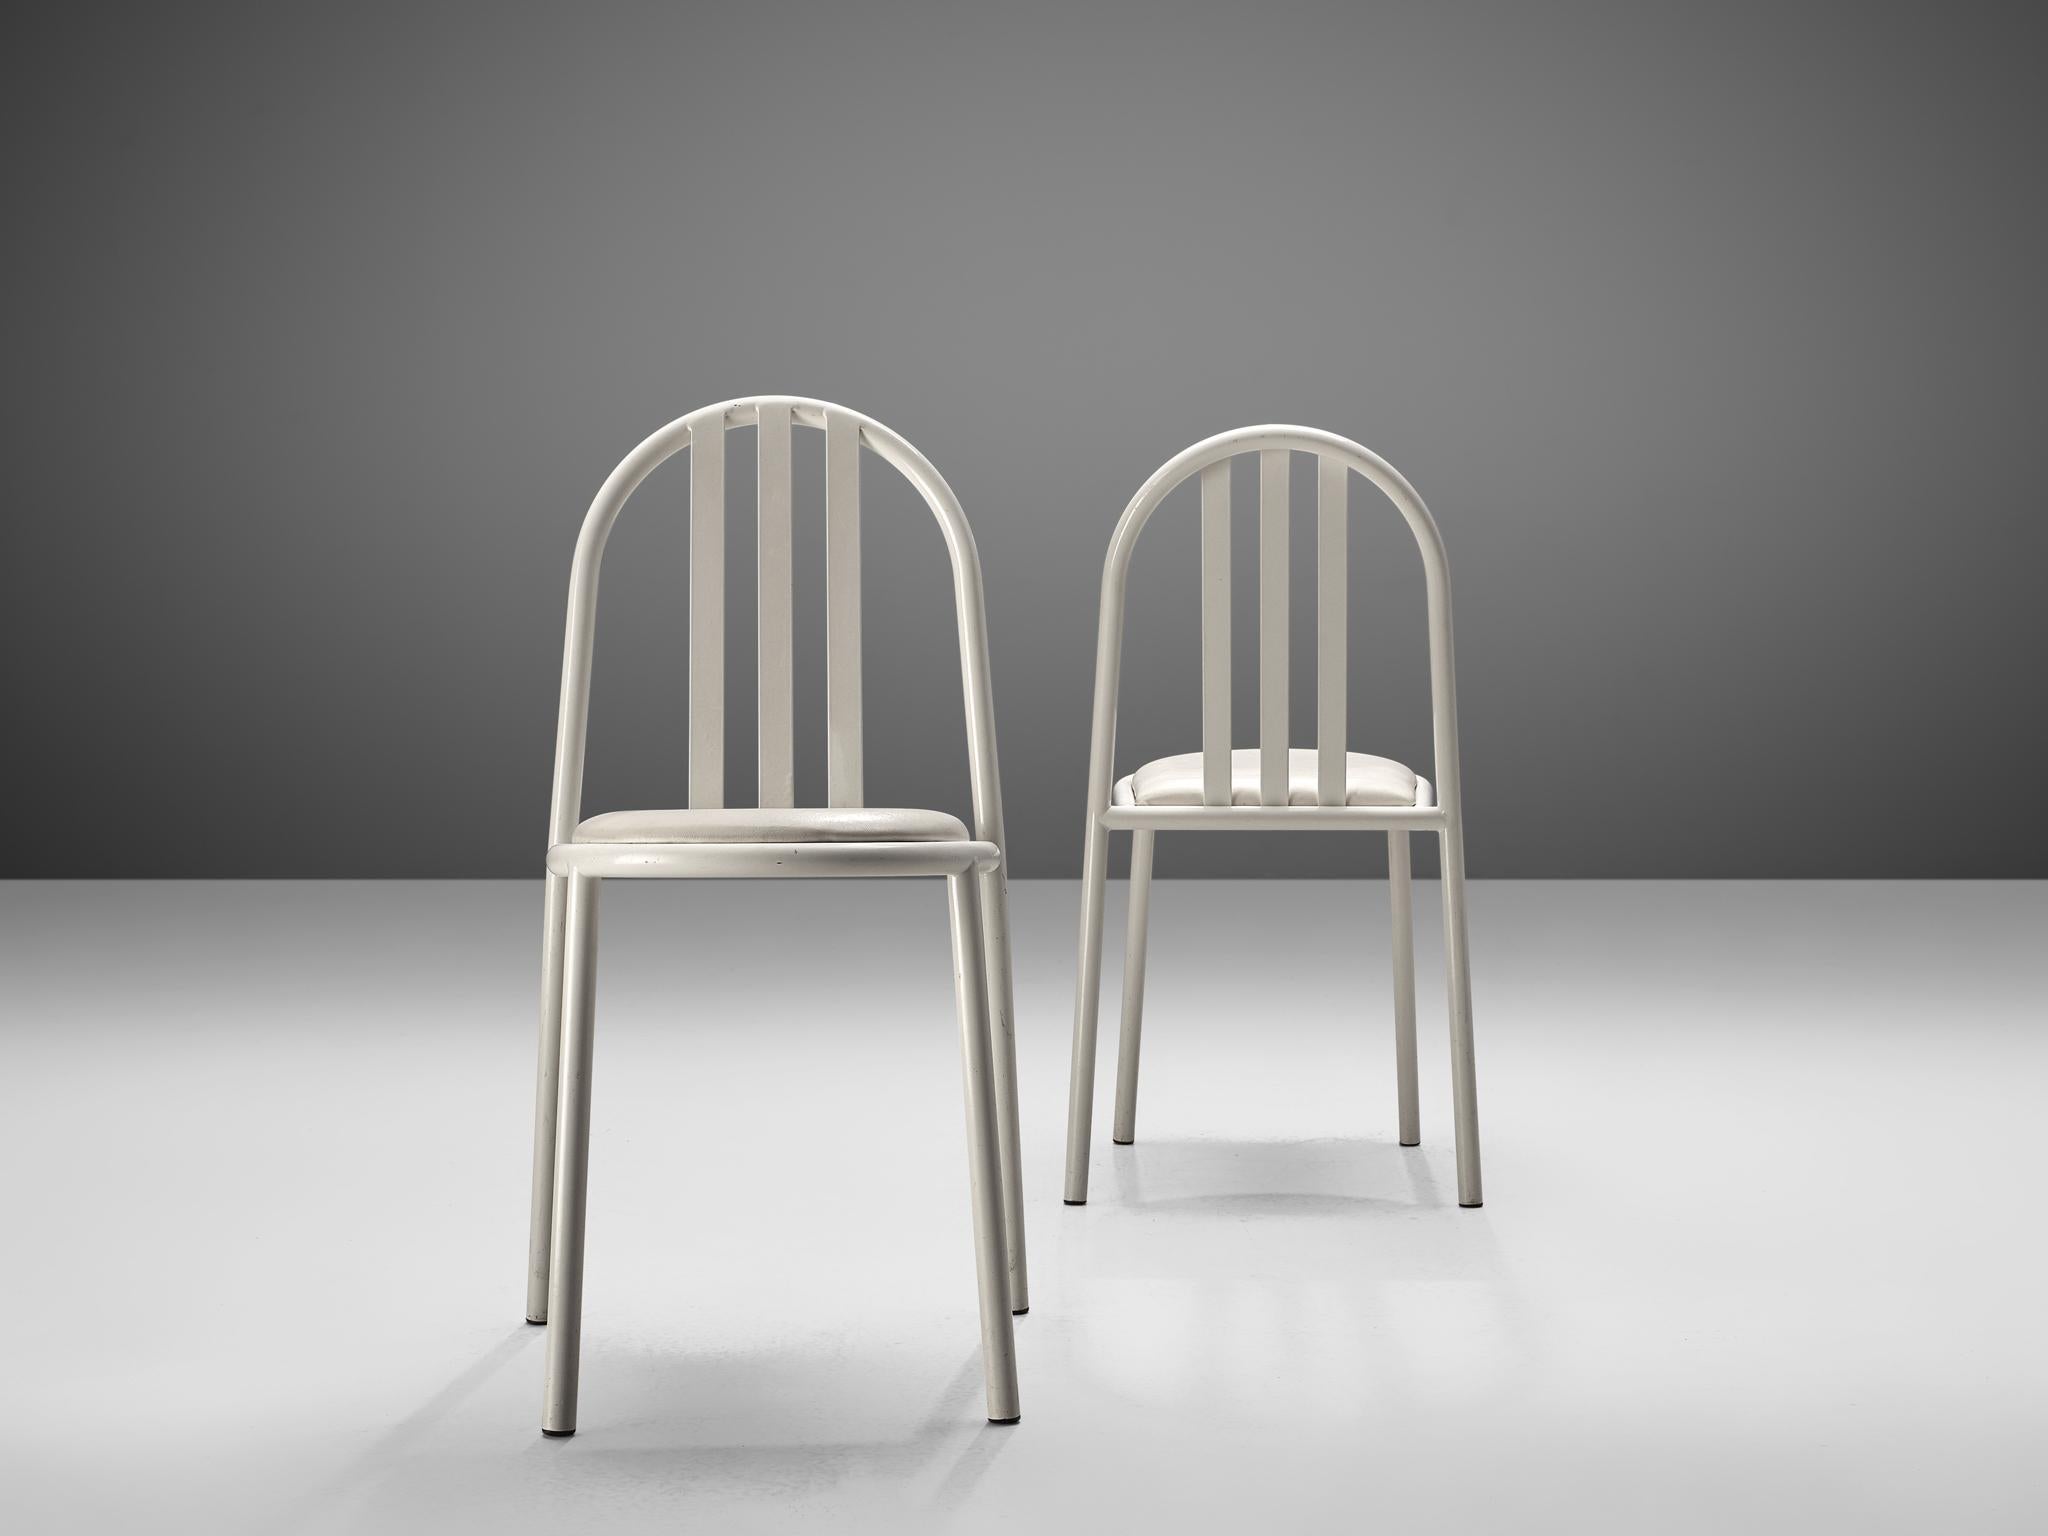 Set of Twelve White Tubular Steel Chairs by Robert Mallet Stevens 1